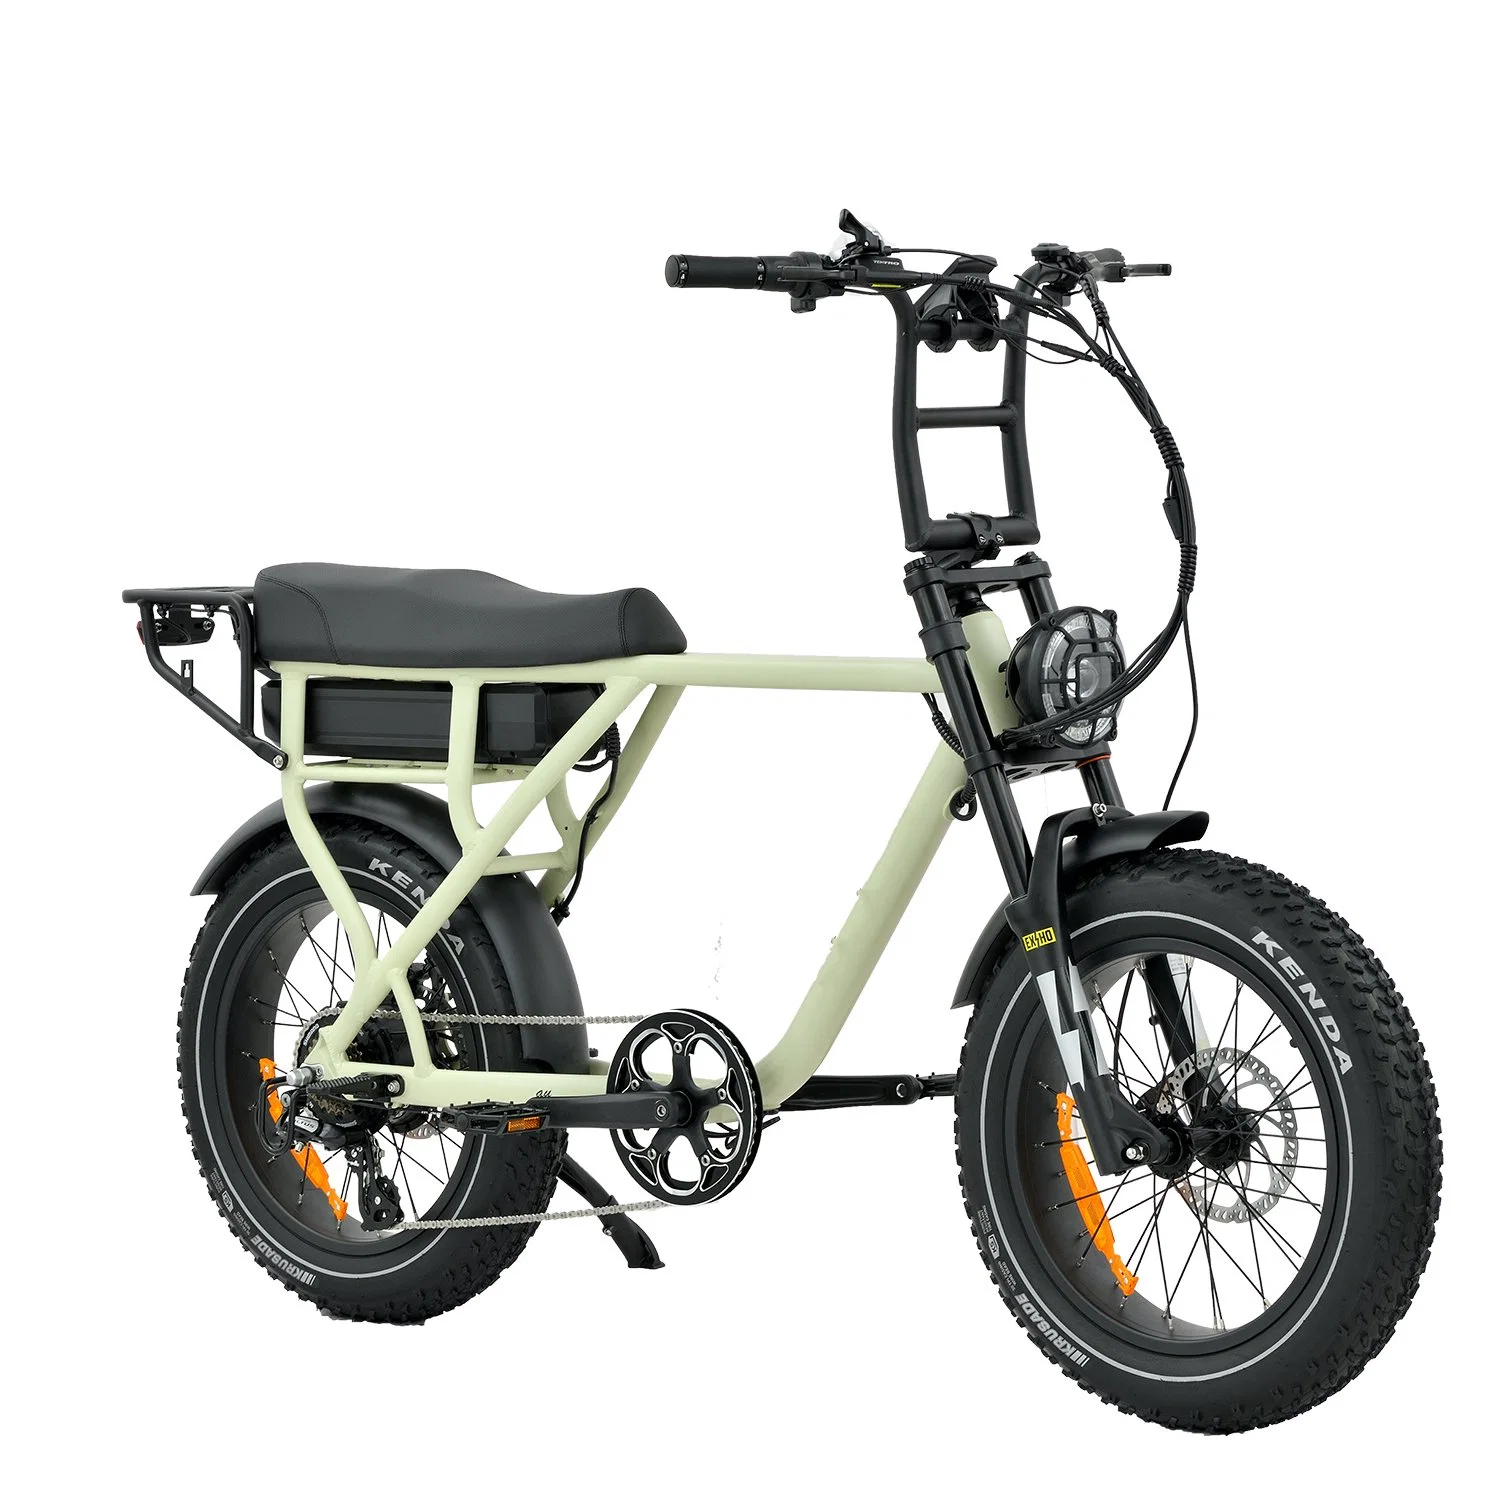 Original Factory Sales 750W 1000W Hinterrad-Antrieb schnell Electric Mountain Bike Surron Retro Fat Ebike